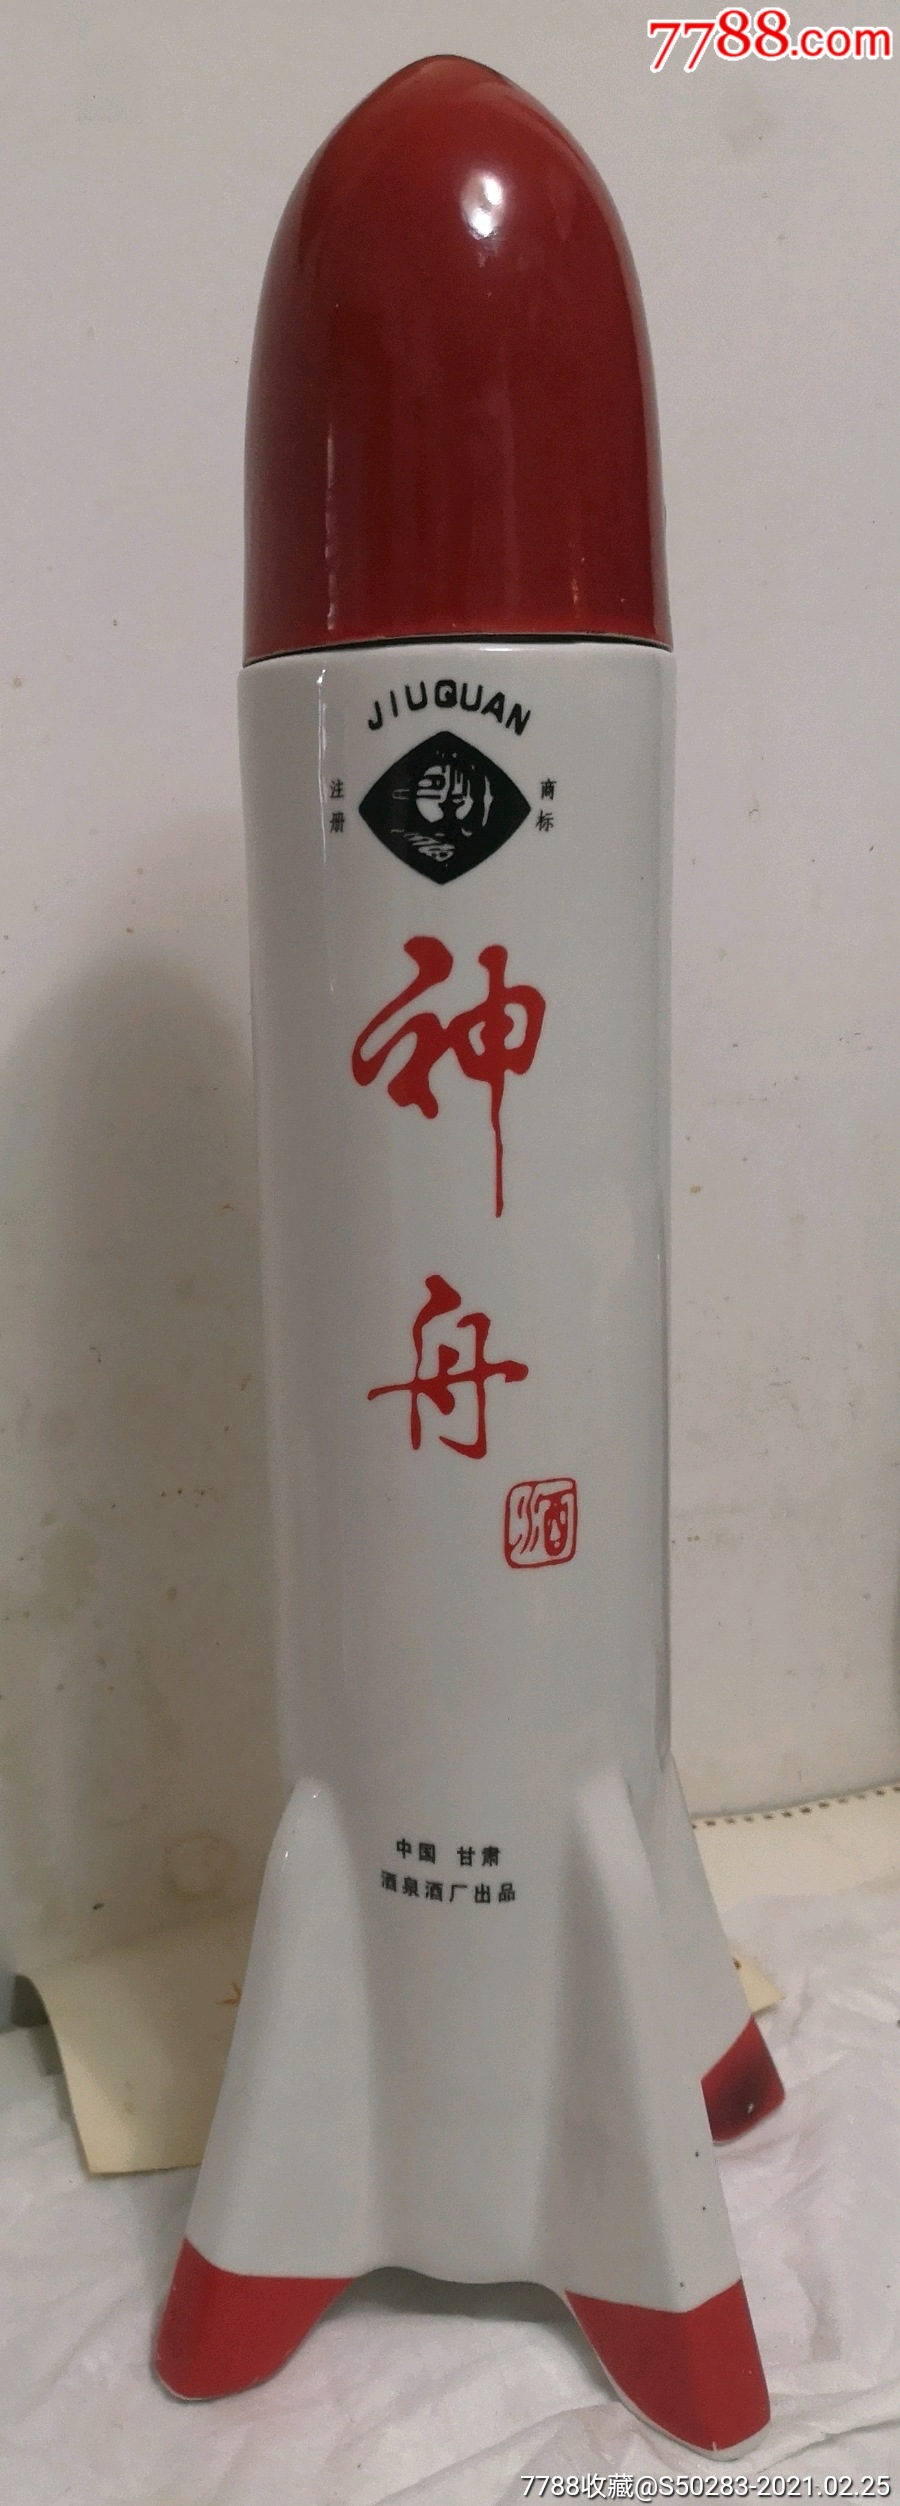 《中国航天神舟酒》火箭型瓷酒瓶